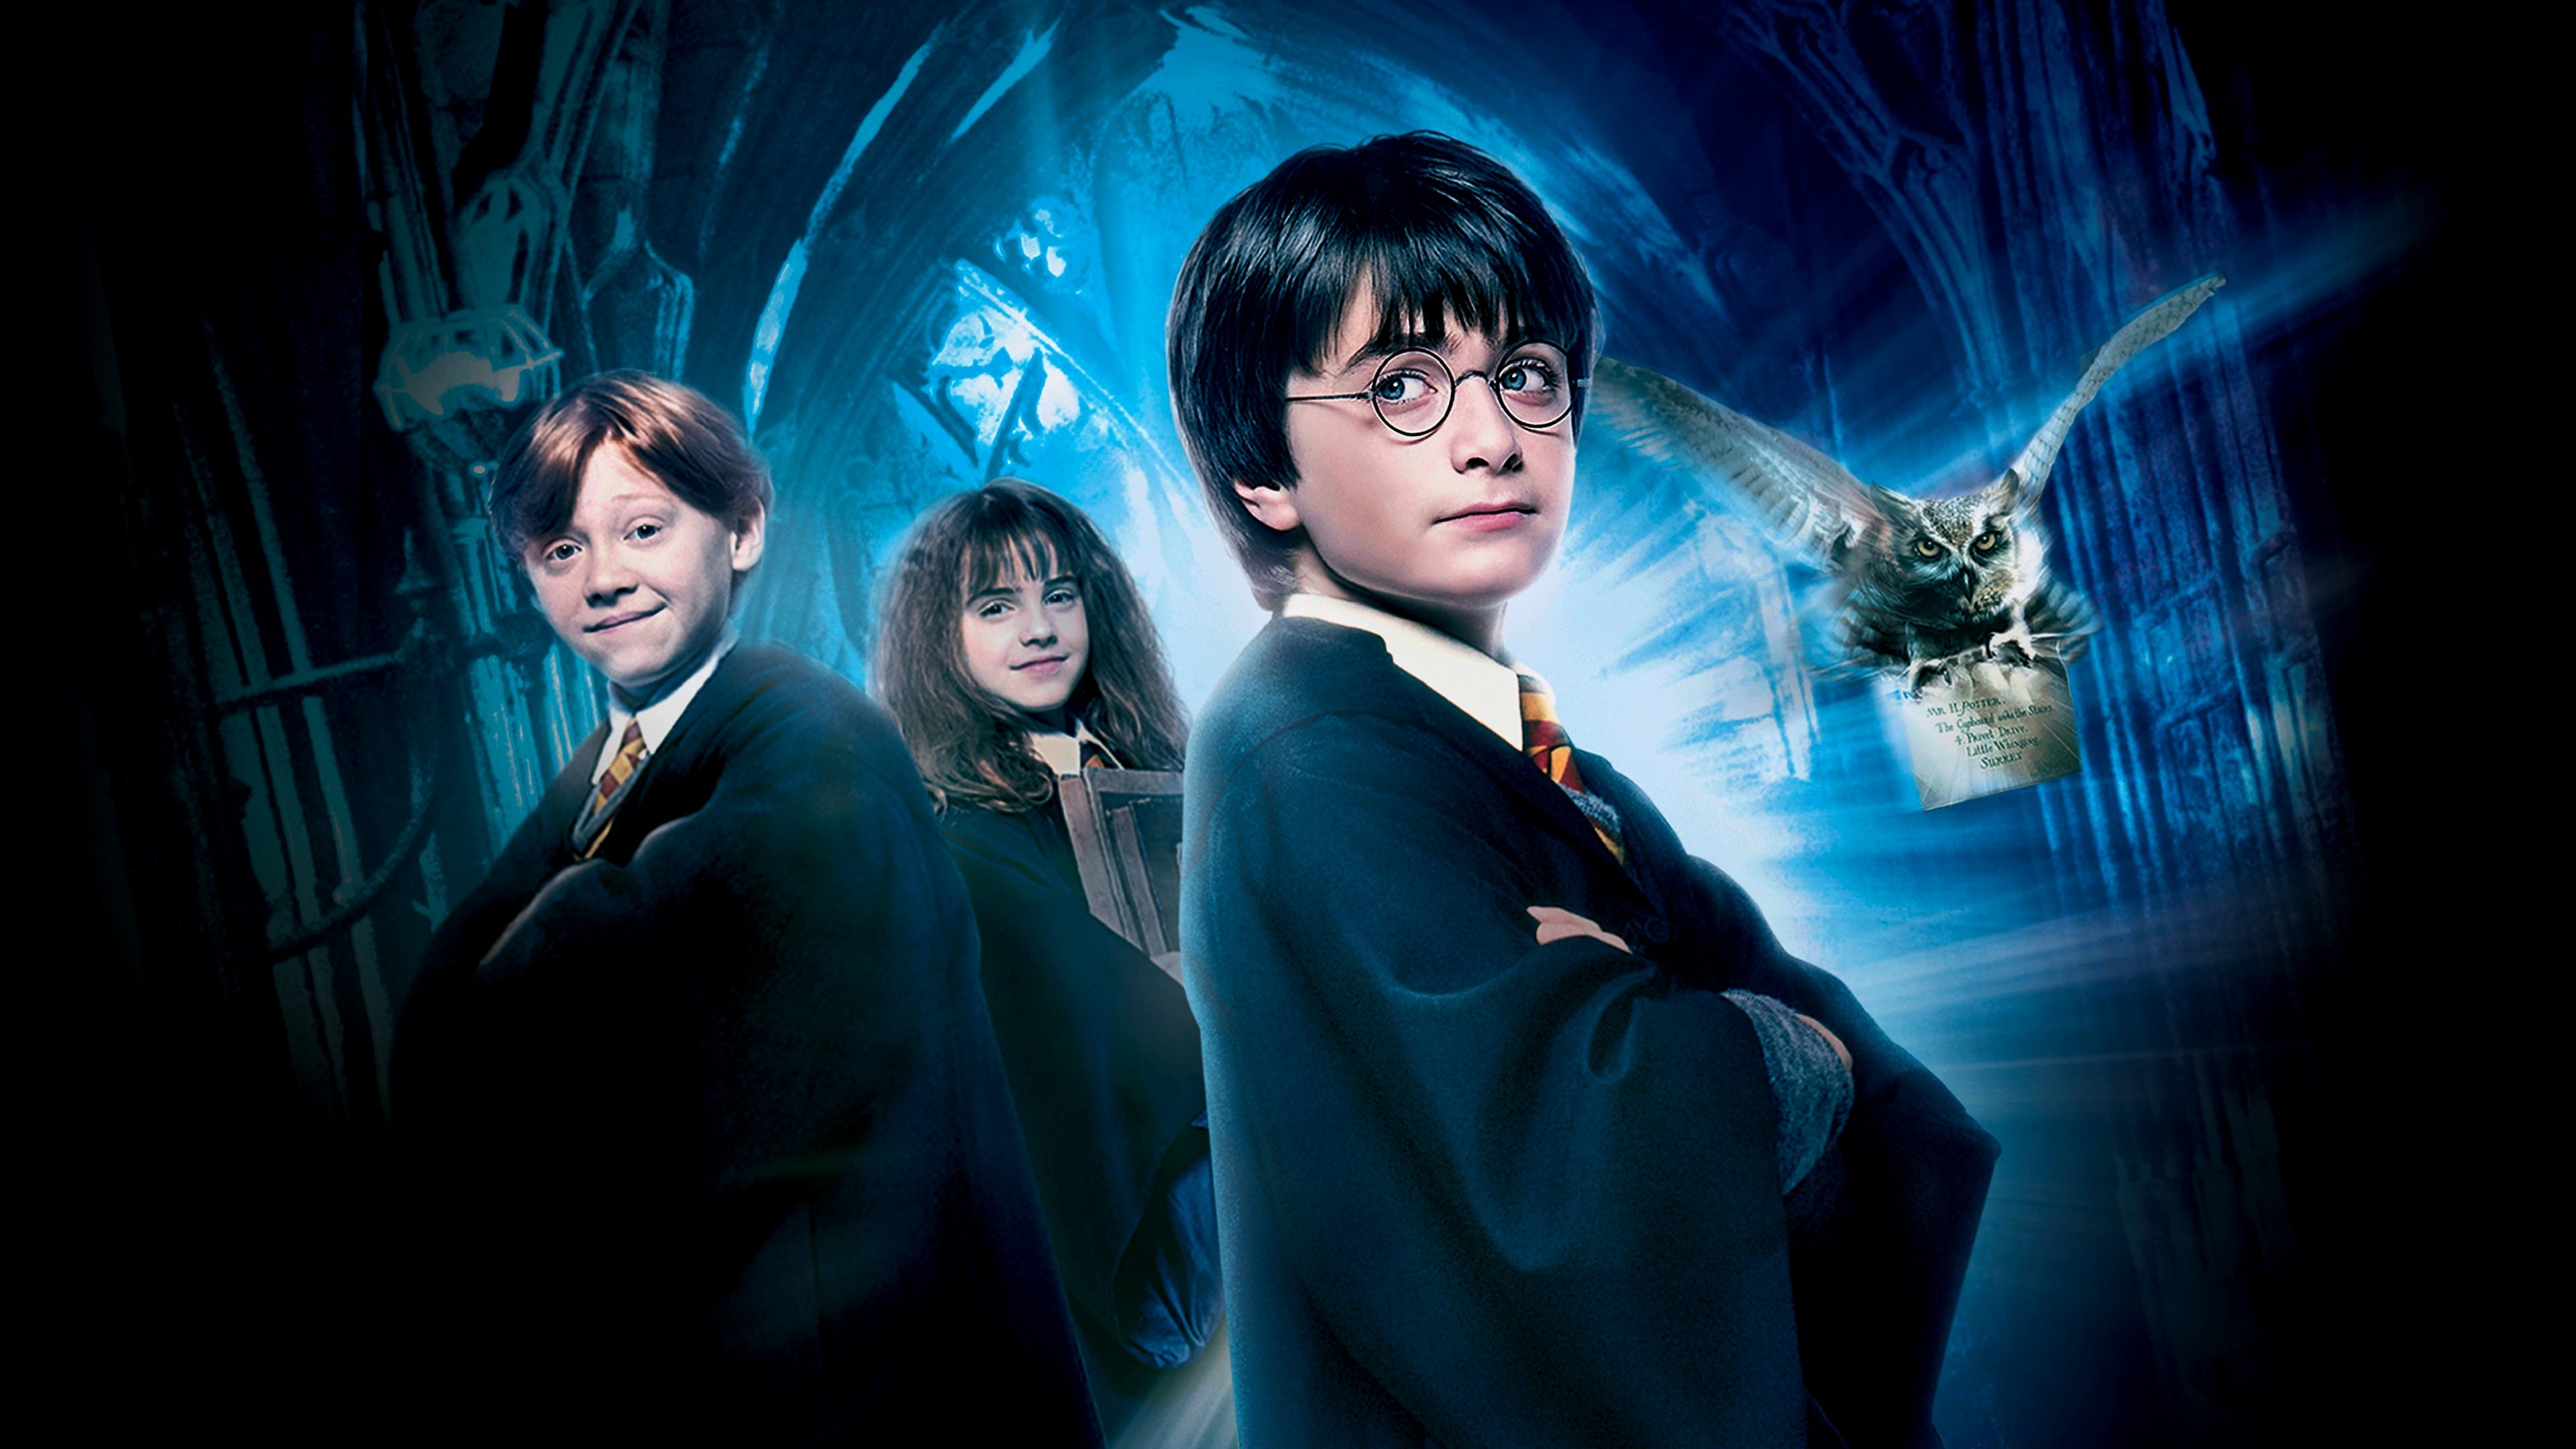 HD wallpaper, Emma Watson As Hermione Granger, Ron Weasley, Daniel Radcliffe As Harry Potter